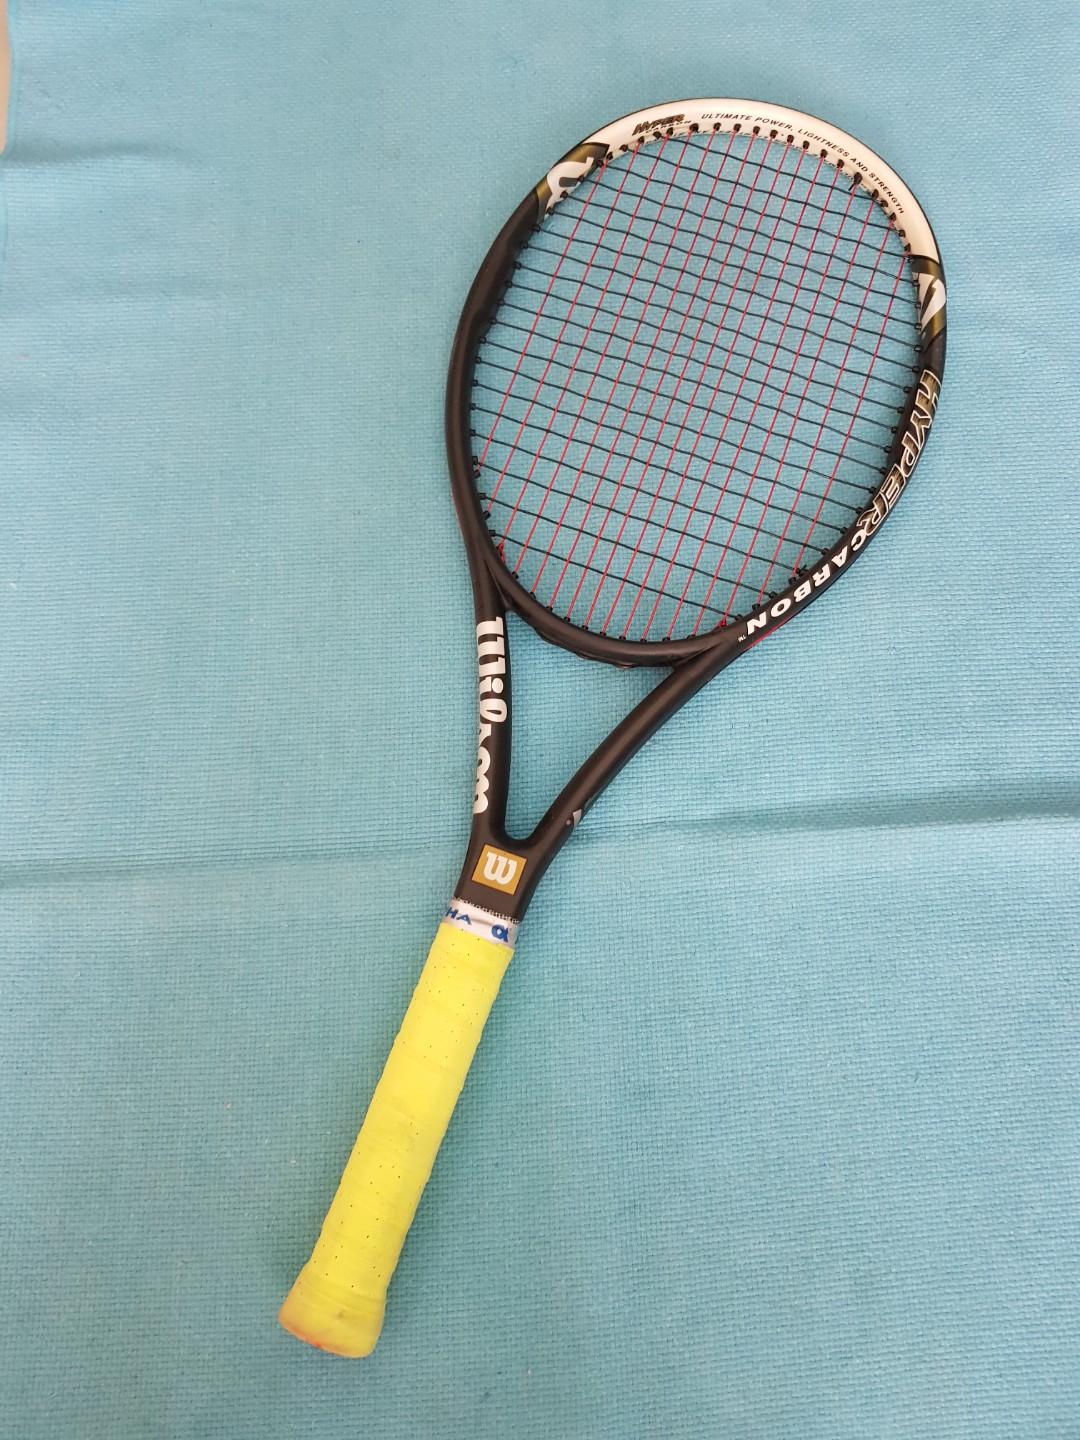 Wilson Hyper Hammer 5.3 tennis racket, Sports Equipment, Sports 